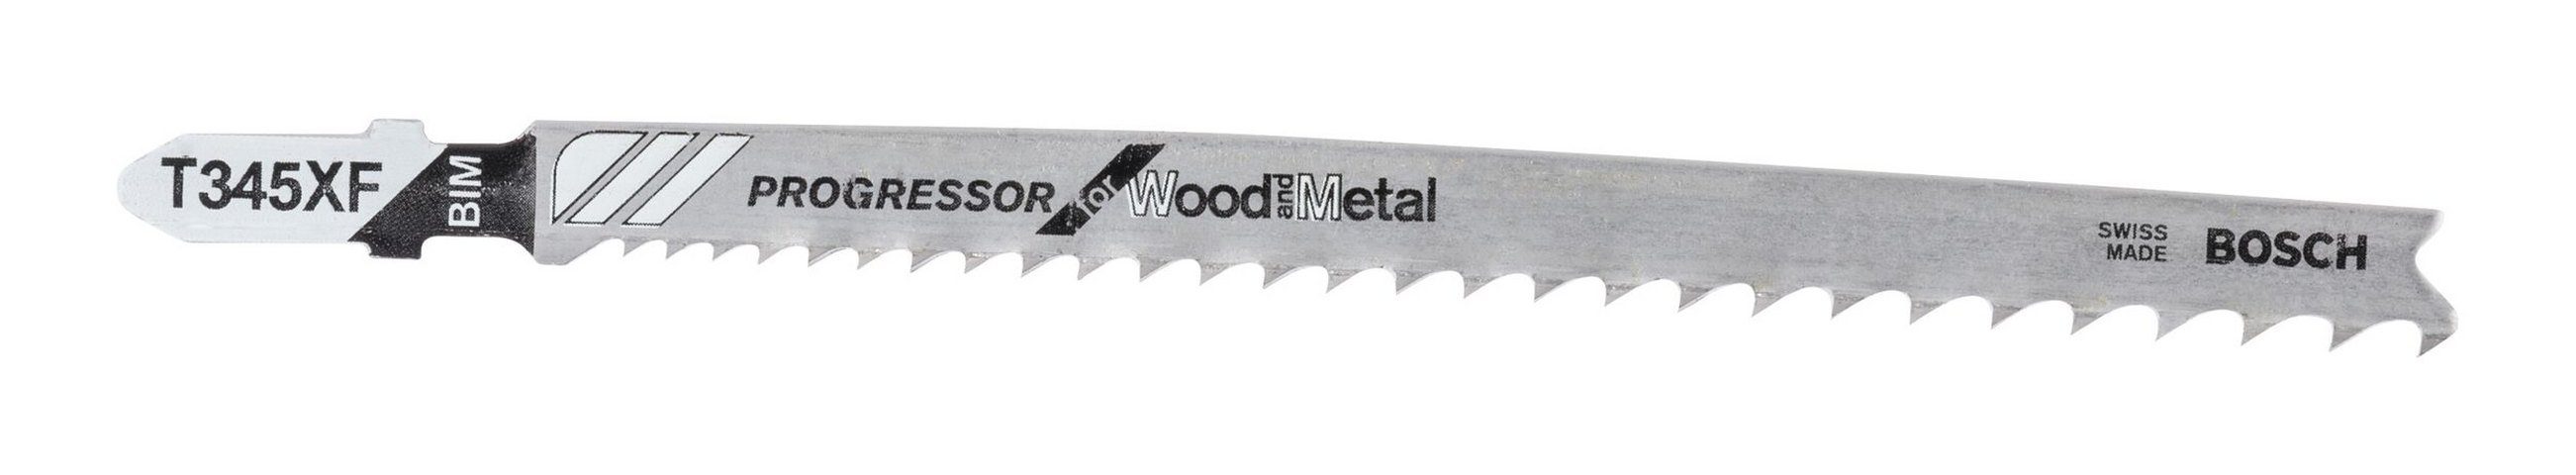 XF and Metal - BOSCH Wood 100er-Pack (100 for T 345 Stichsägeblatt Stück), Progressor